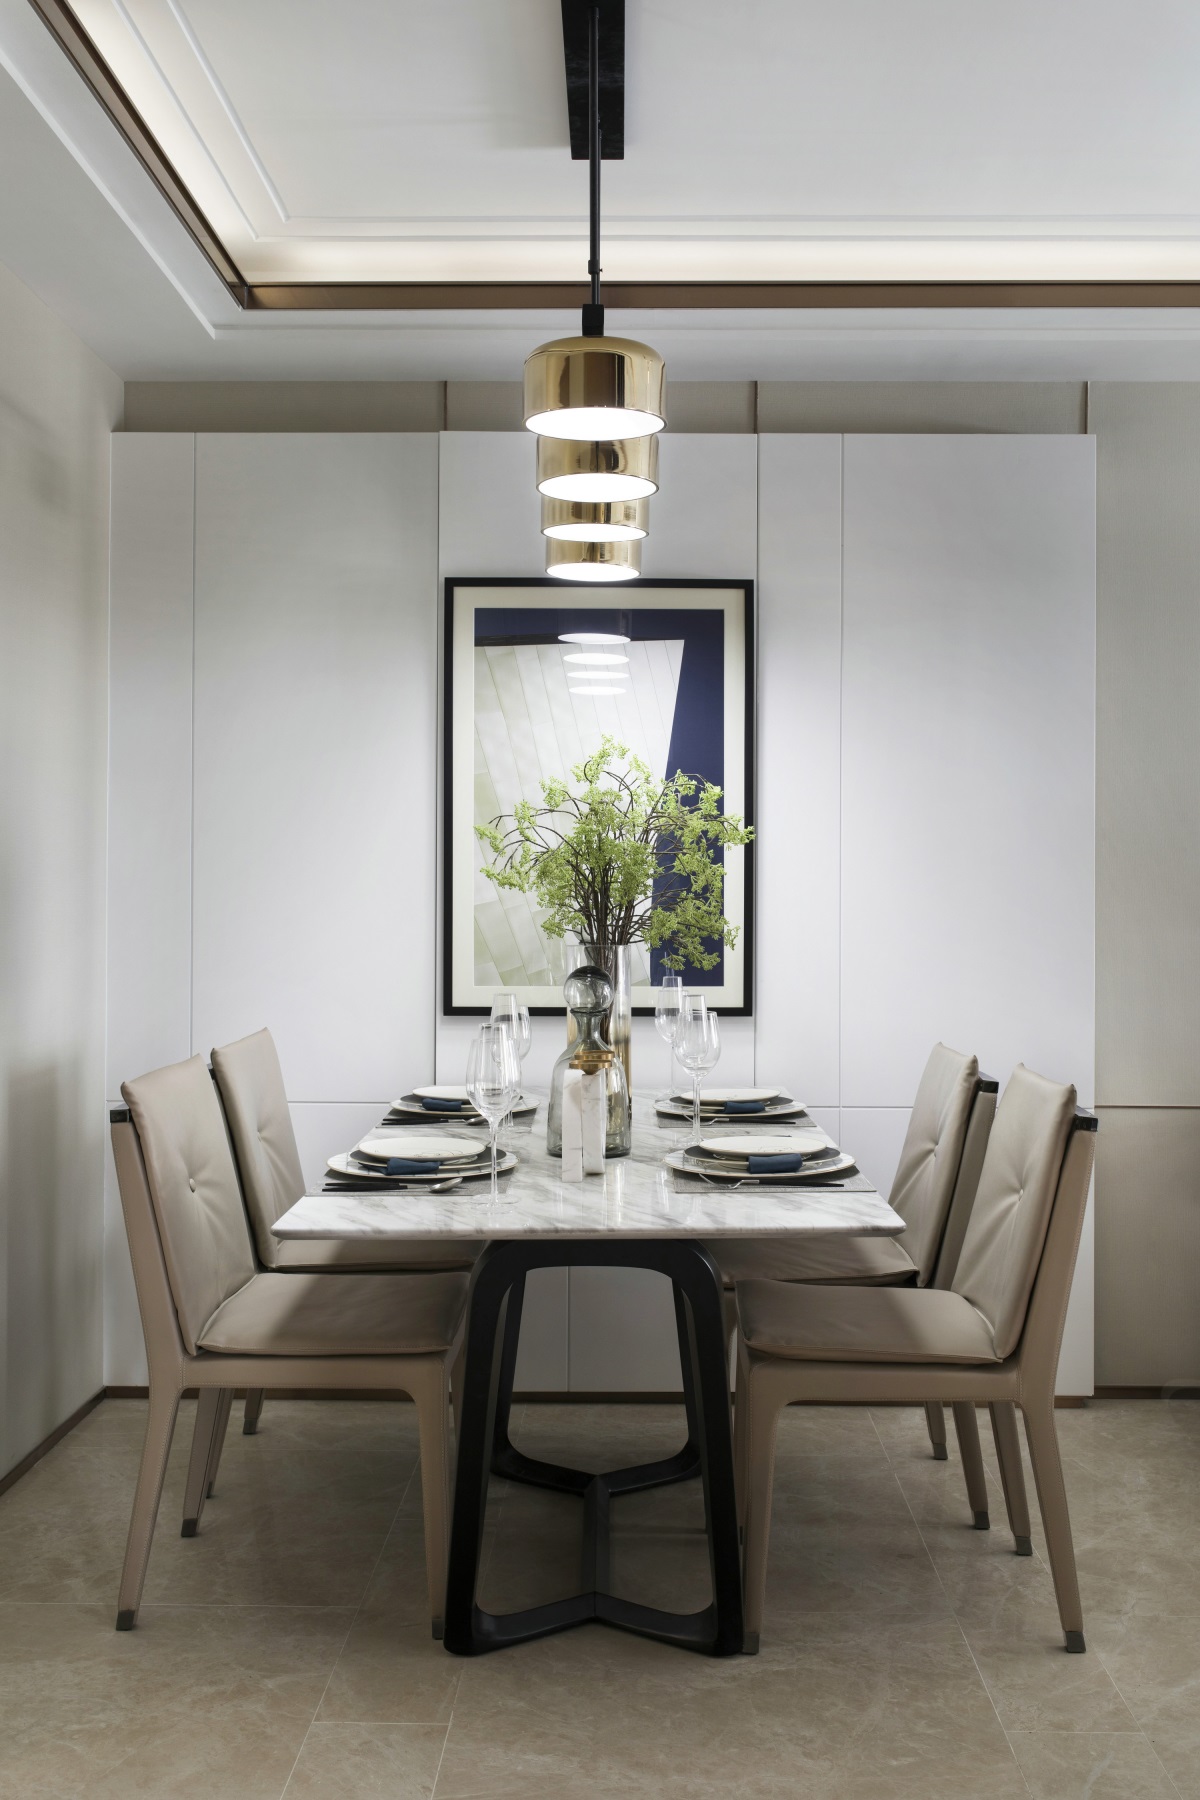 大面积的白色墙下搭配米色餐椅，质朴的轻奢文化表现的淋漓尽致，新颖而又贴切。